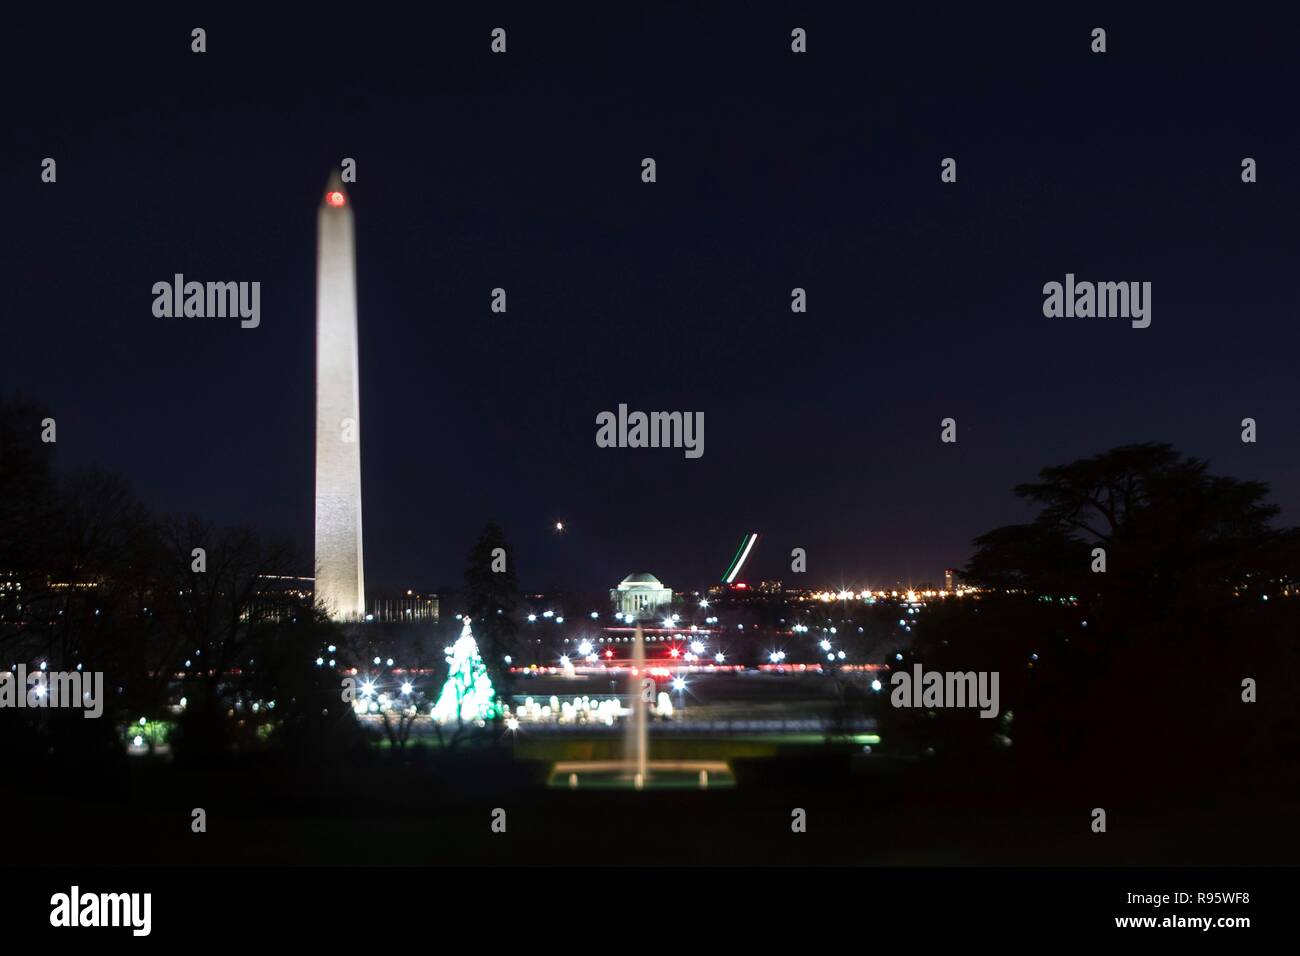 Vista del Monumento a Washington e il National Mall dal South Lawn della Casa Bianca decorato per il Natale e illuminata di notte il 12 dicembre 2018 a Washington, DC. Le striature sono commerciali gli aerei che decollano dall'Aeroporto Nazionale Reagan sul Fiume Potomac. Foto Stock